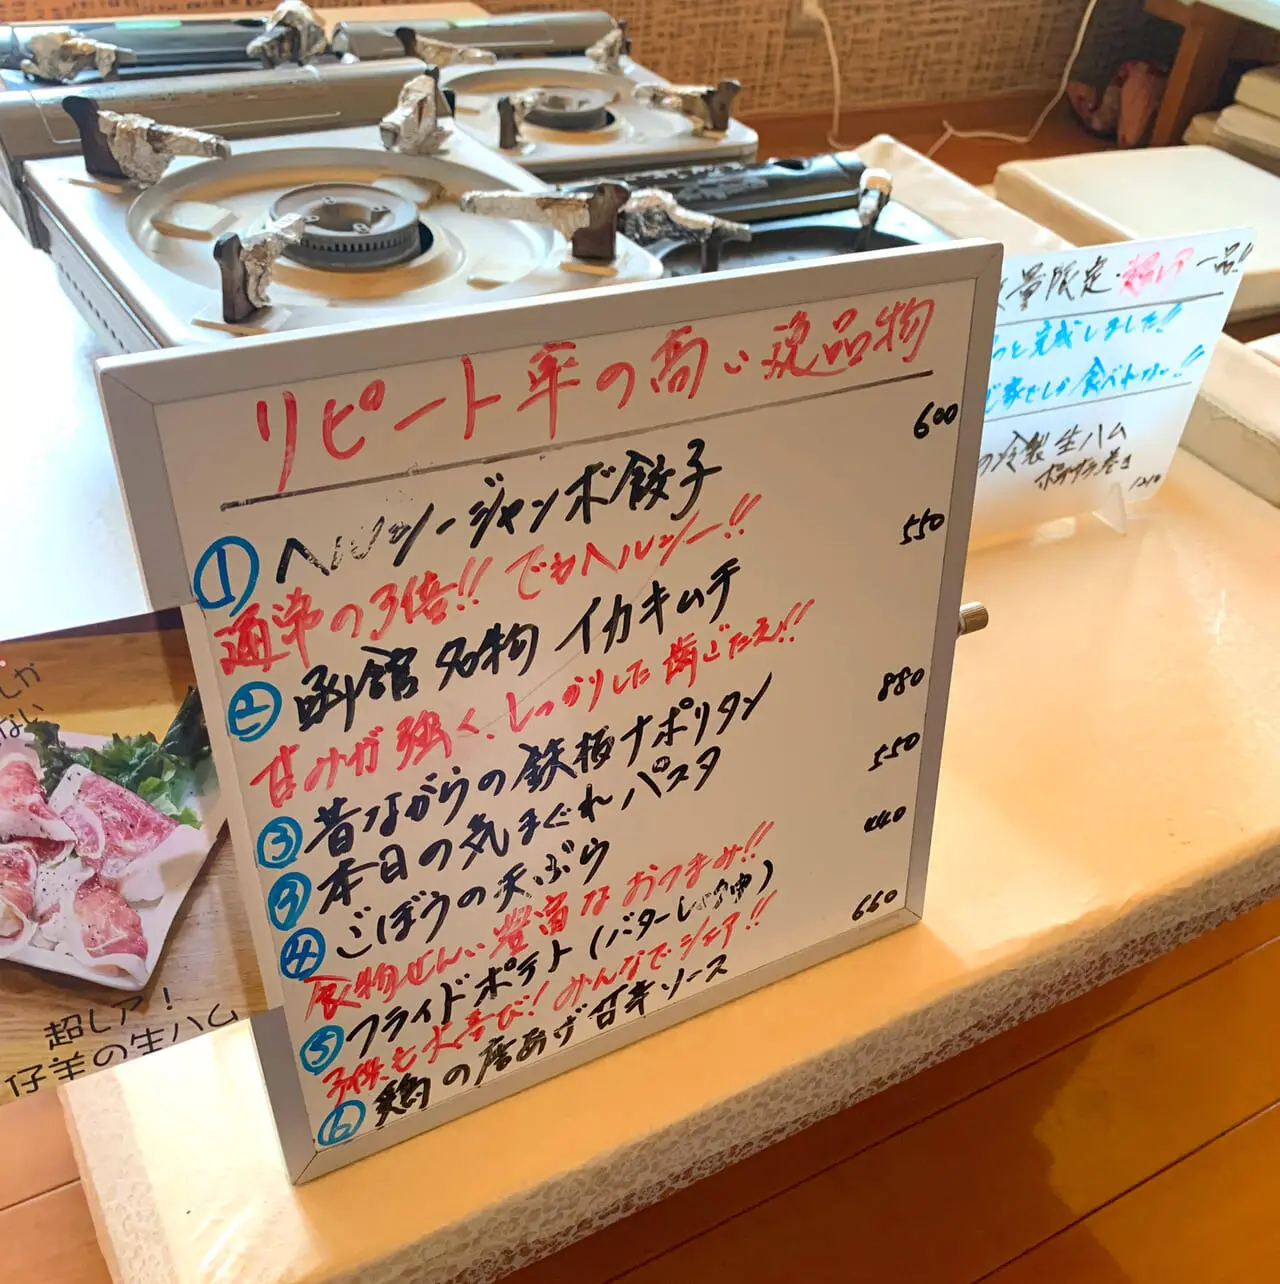 「ひつじ家」では北海道産の美味しいラム肉を堪能できます!!